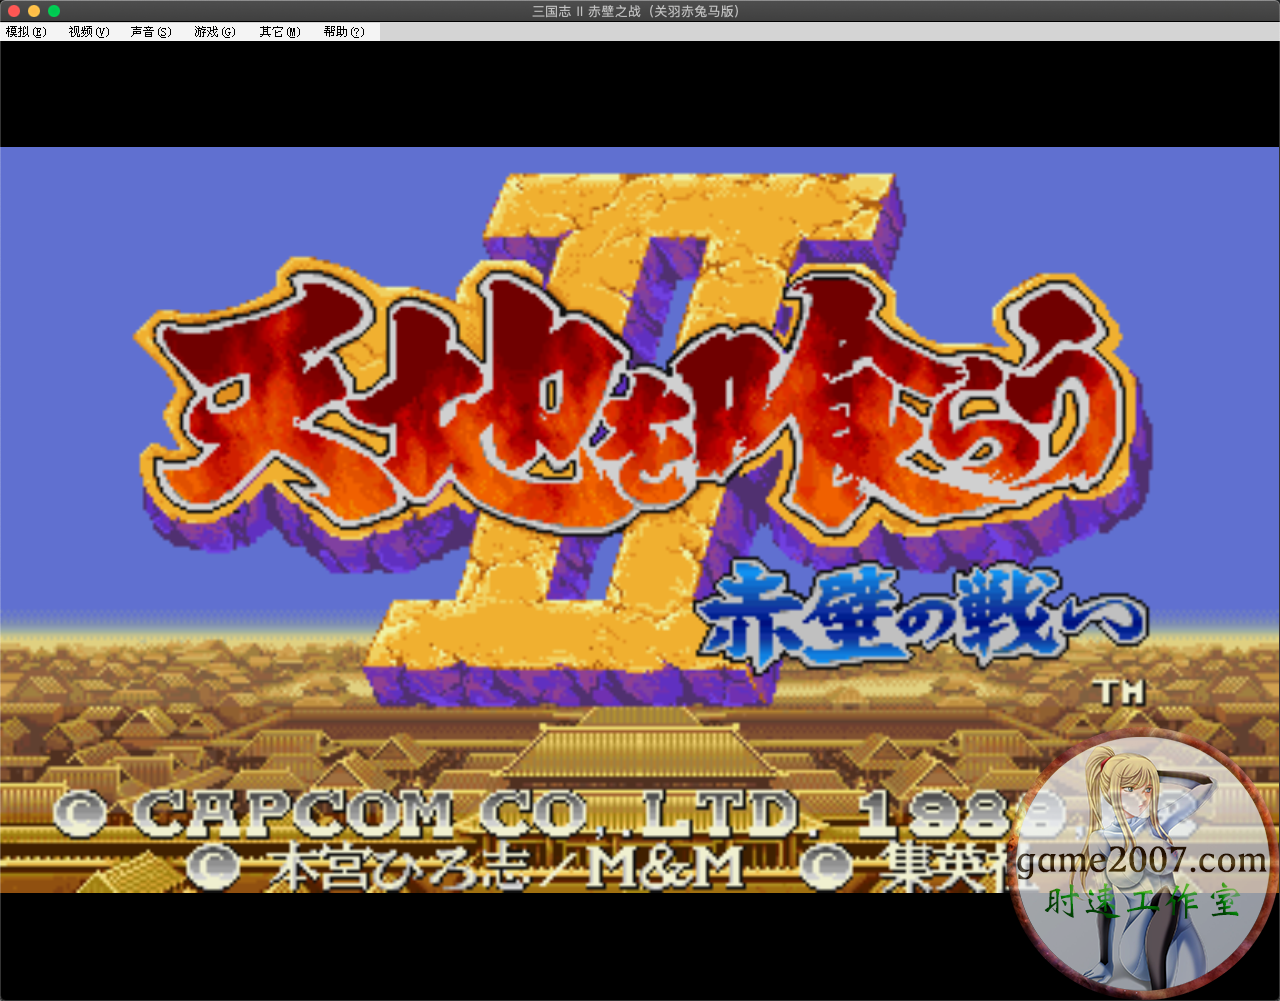 街机三国志2全改版 MAC游戏 苹果电脑游戏 繁体中文版